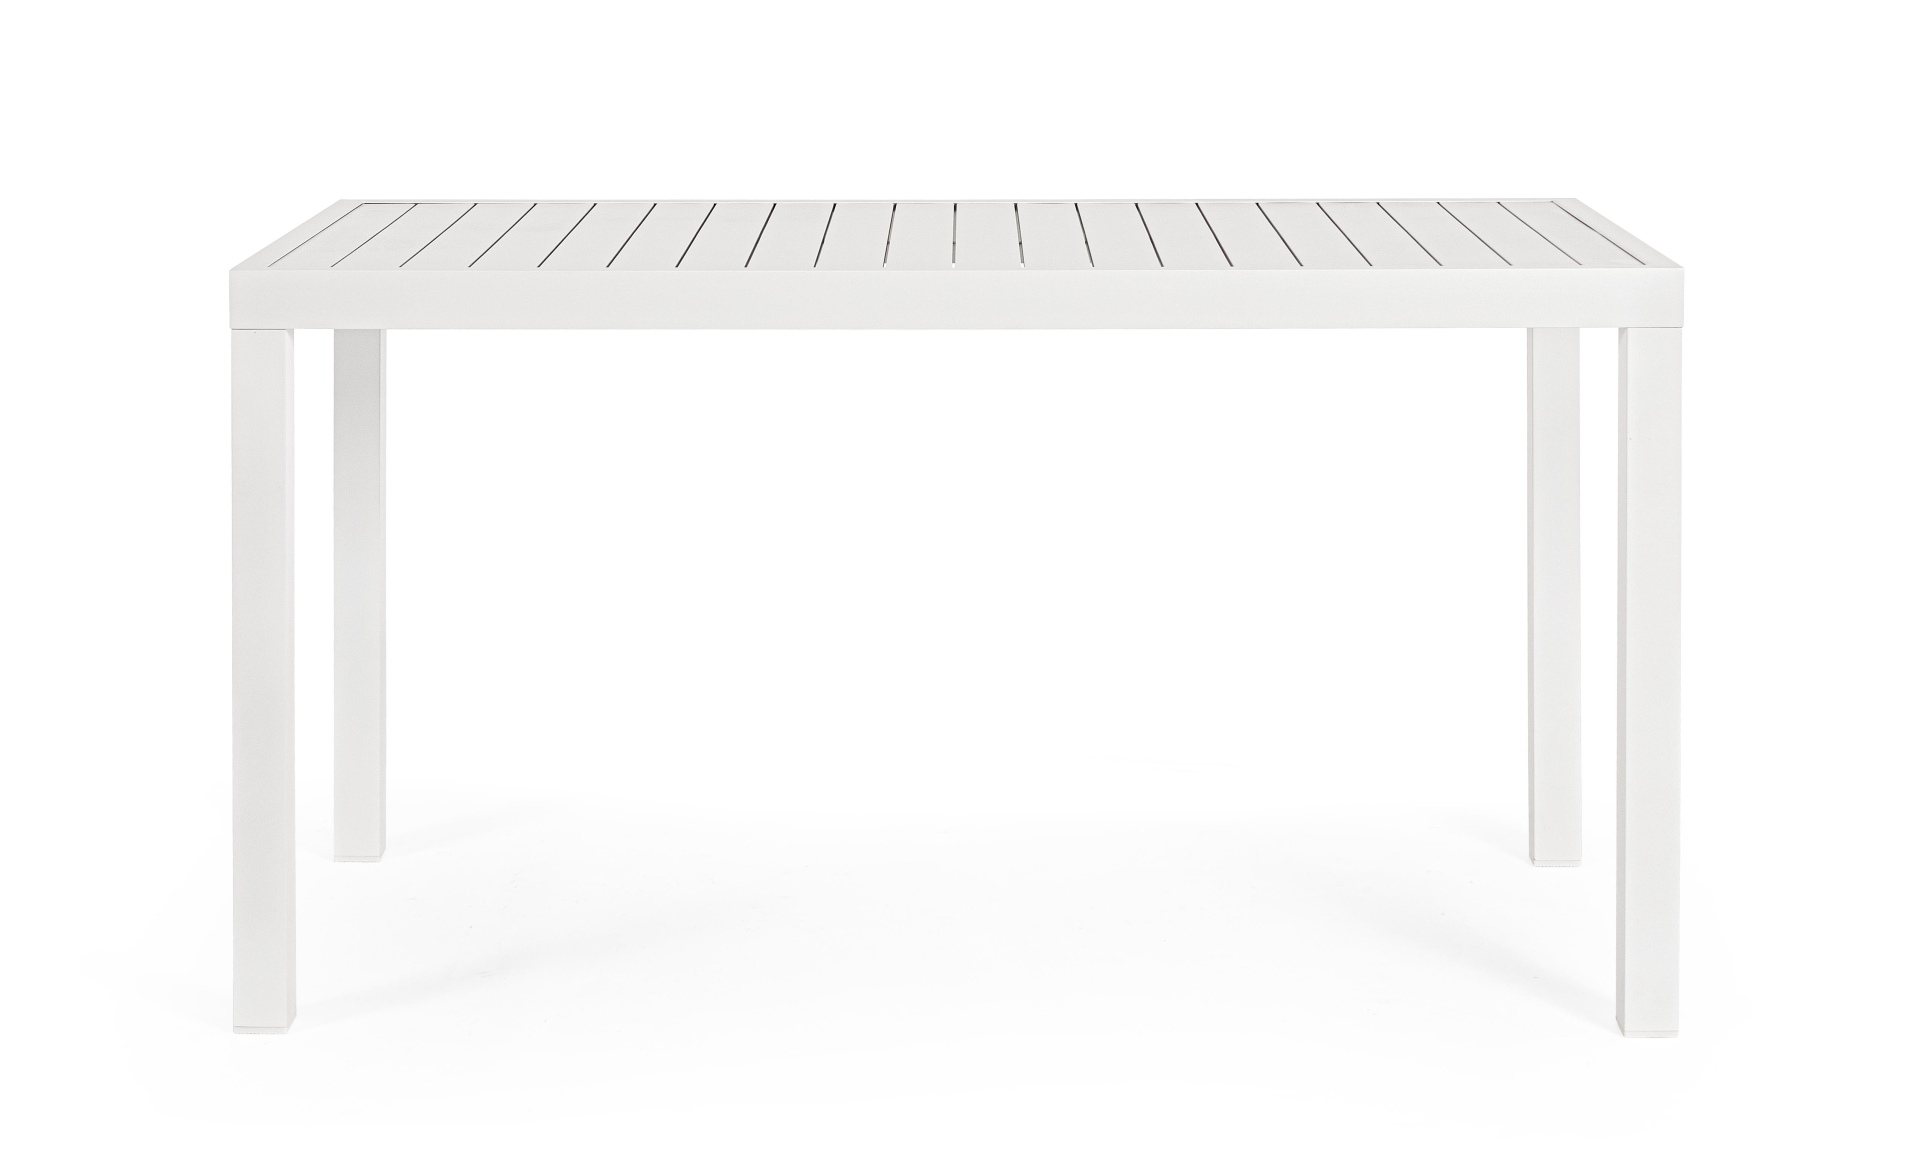 Der Gartentisch Hilde überzeugt mit seinem modernen Design. Gefertigt wurde er aus Aluminium, welches einen weißen Farbton besitzt. Das Gestell ist aus auch Aluminium und hat eine weiße Farbe. Der Tisch verfügt über eine Länge von 130 cm und ist für den O